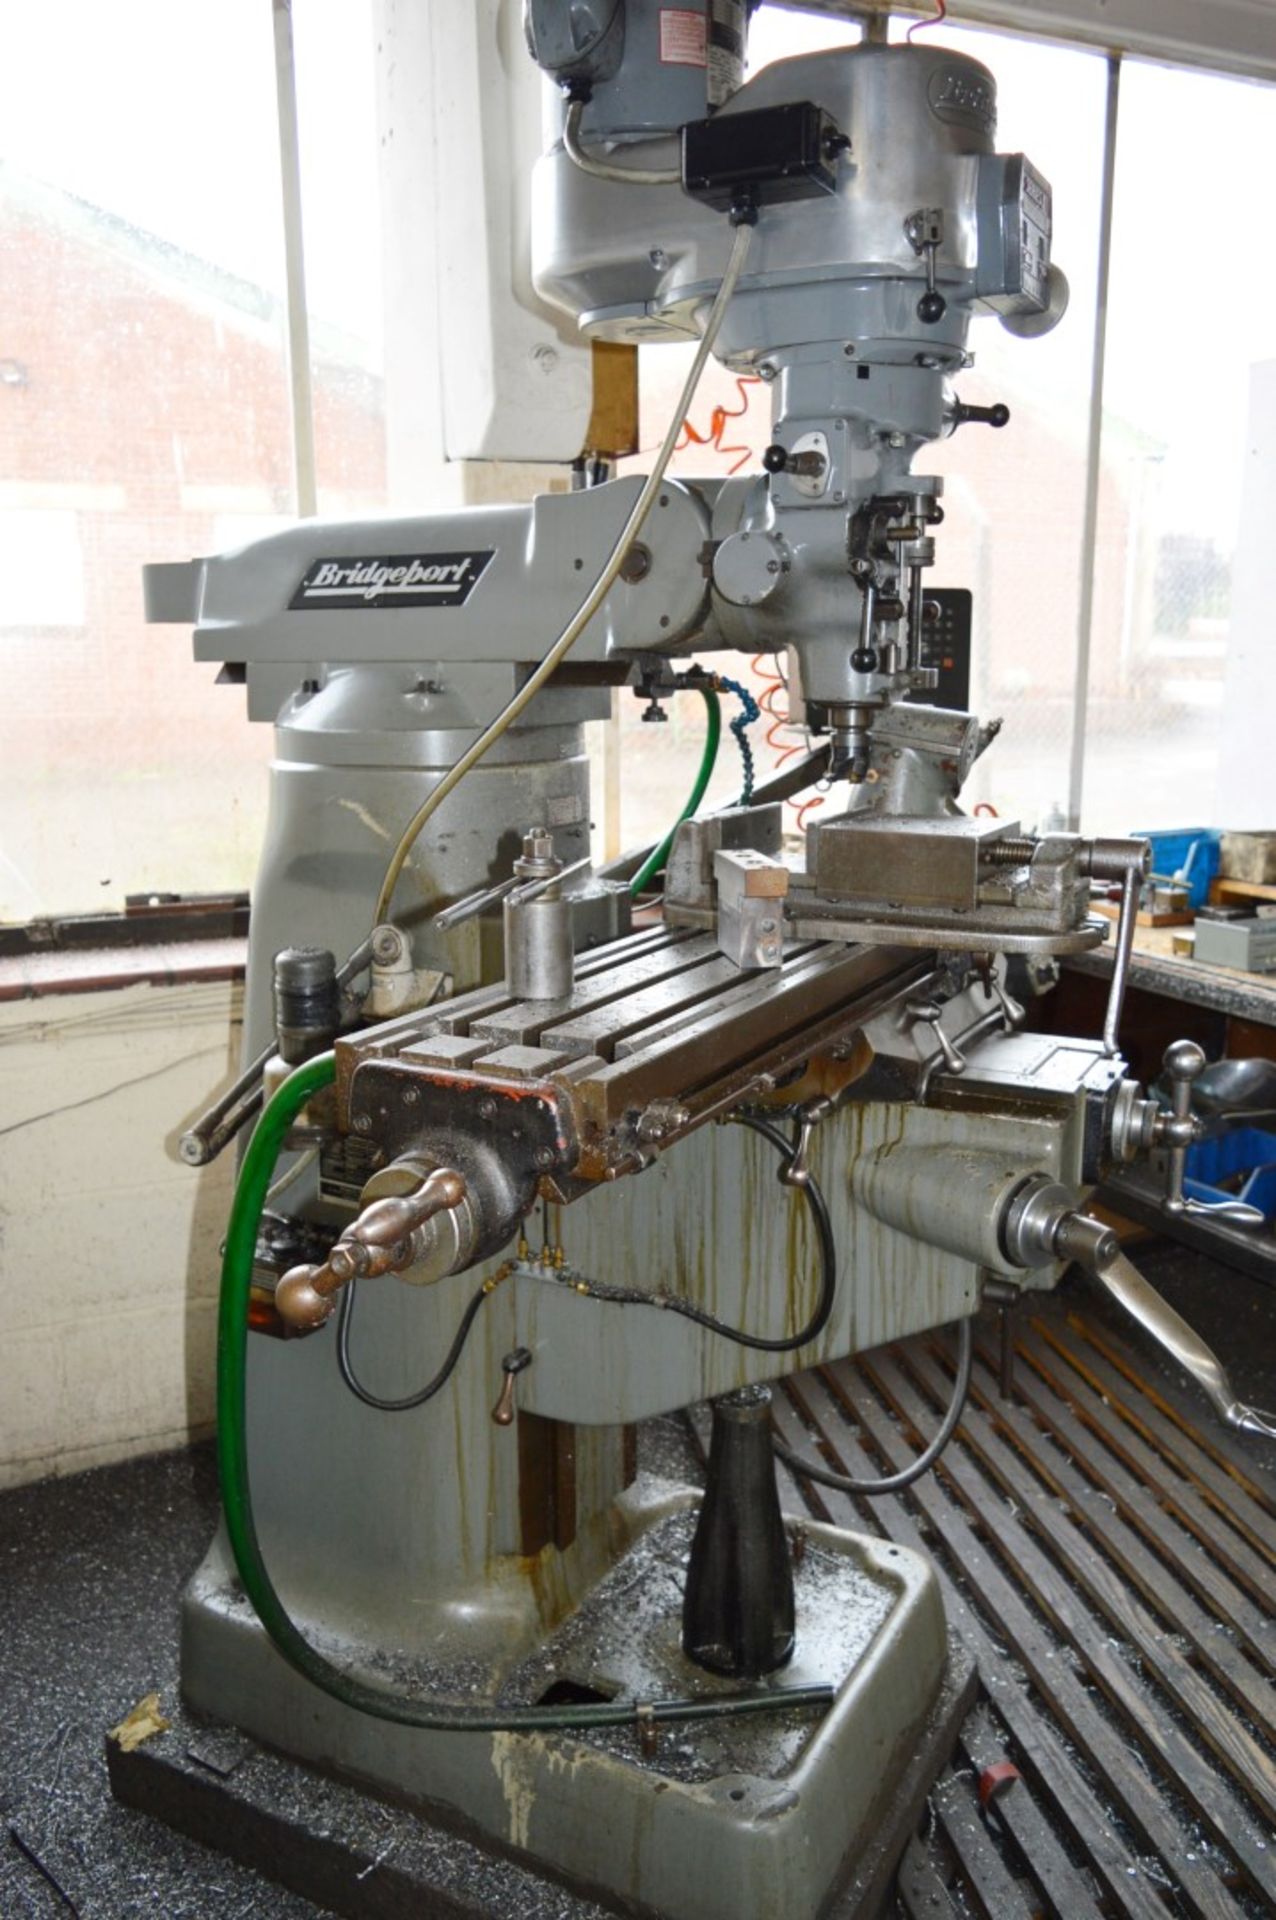 1 x Bridgeport Series 1 Turret Milling Machine - Location: Worcester WR14